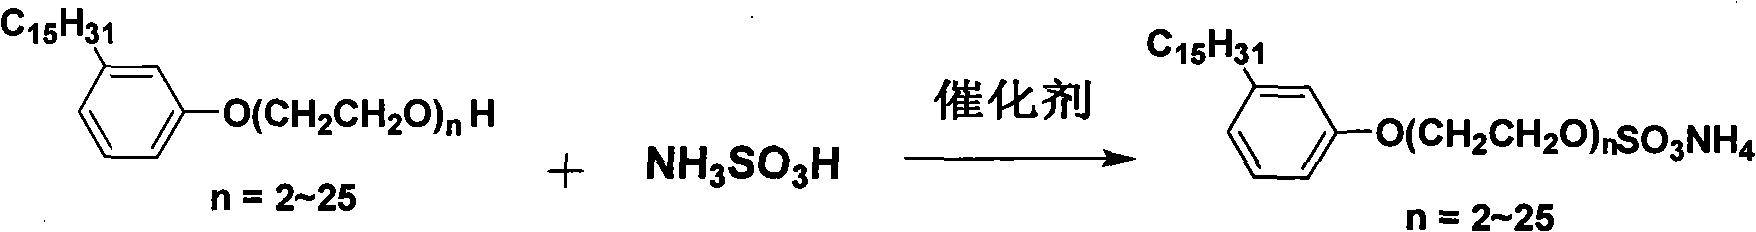 Cardanol polyoxyethylene ether ammonium sulfate and preparation method thereof